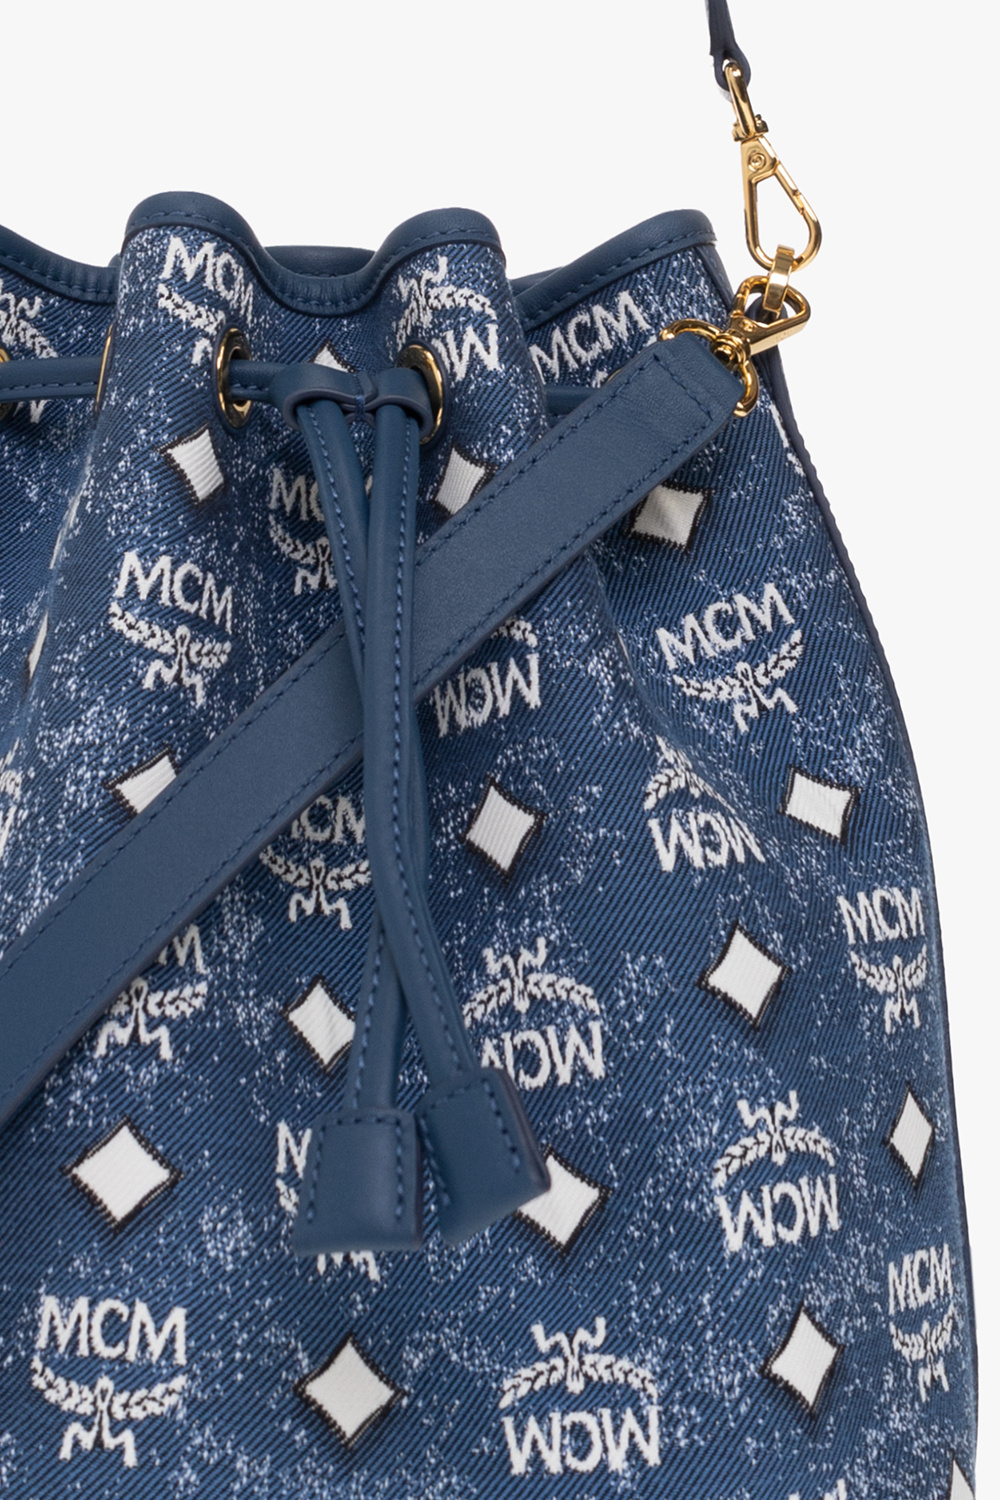 Louis Vuitton Bracelet Monogram Chain Metal - clothing & accessories - by  owner - apparel sale - craigslist